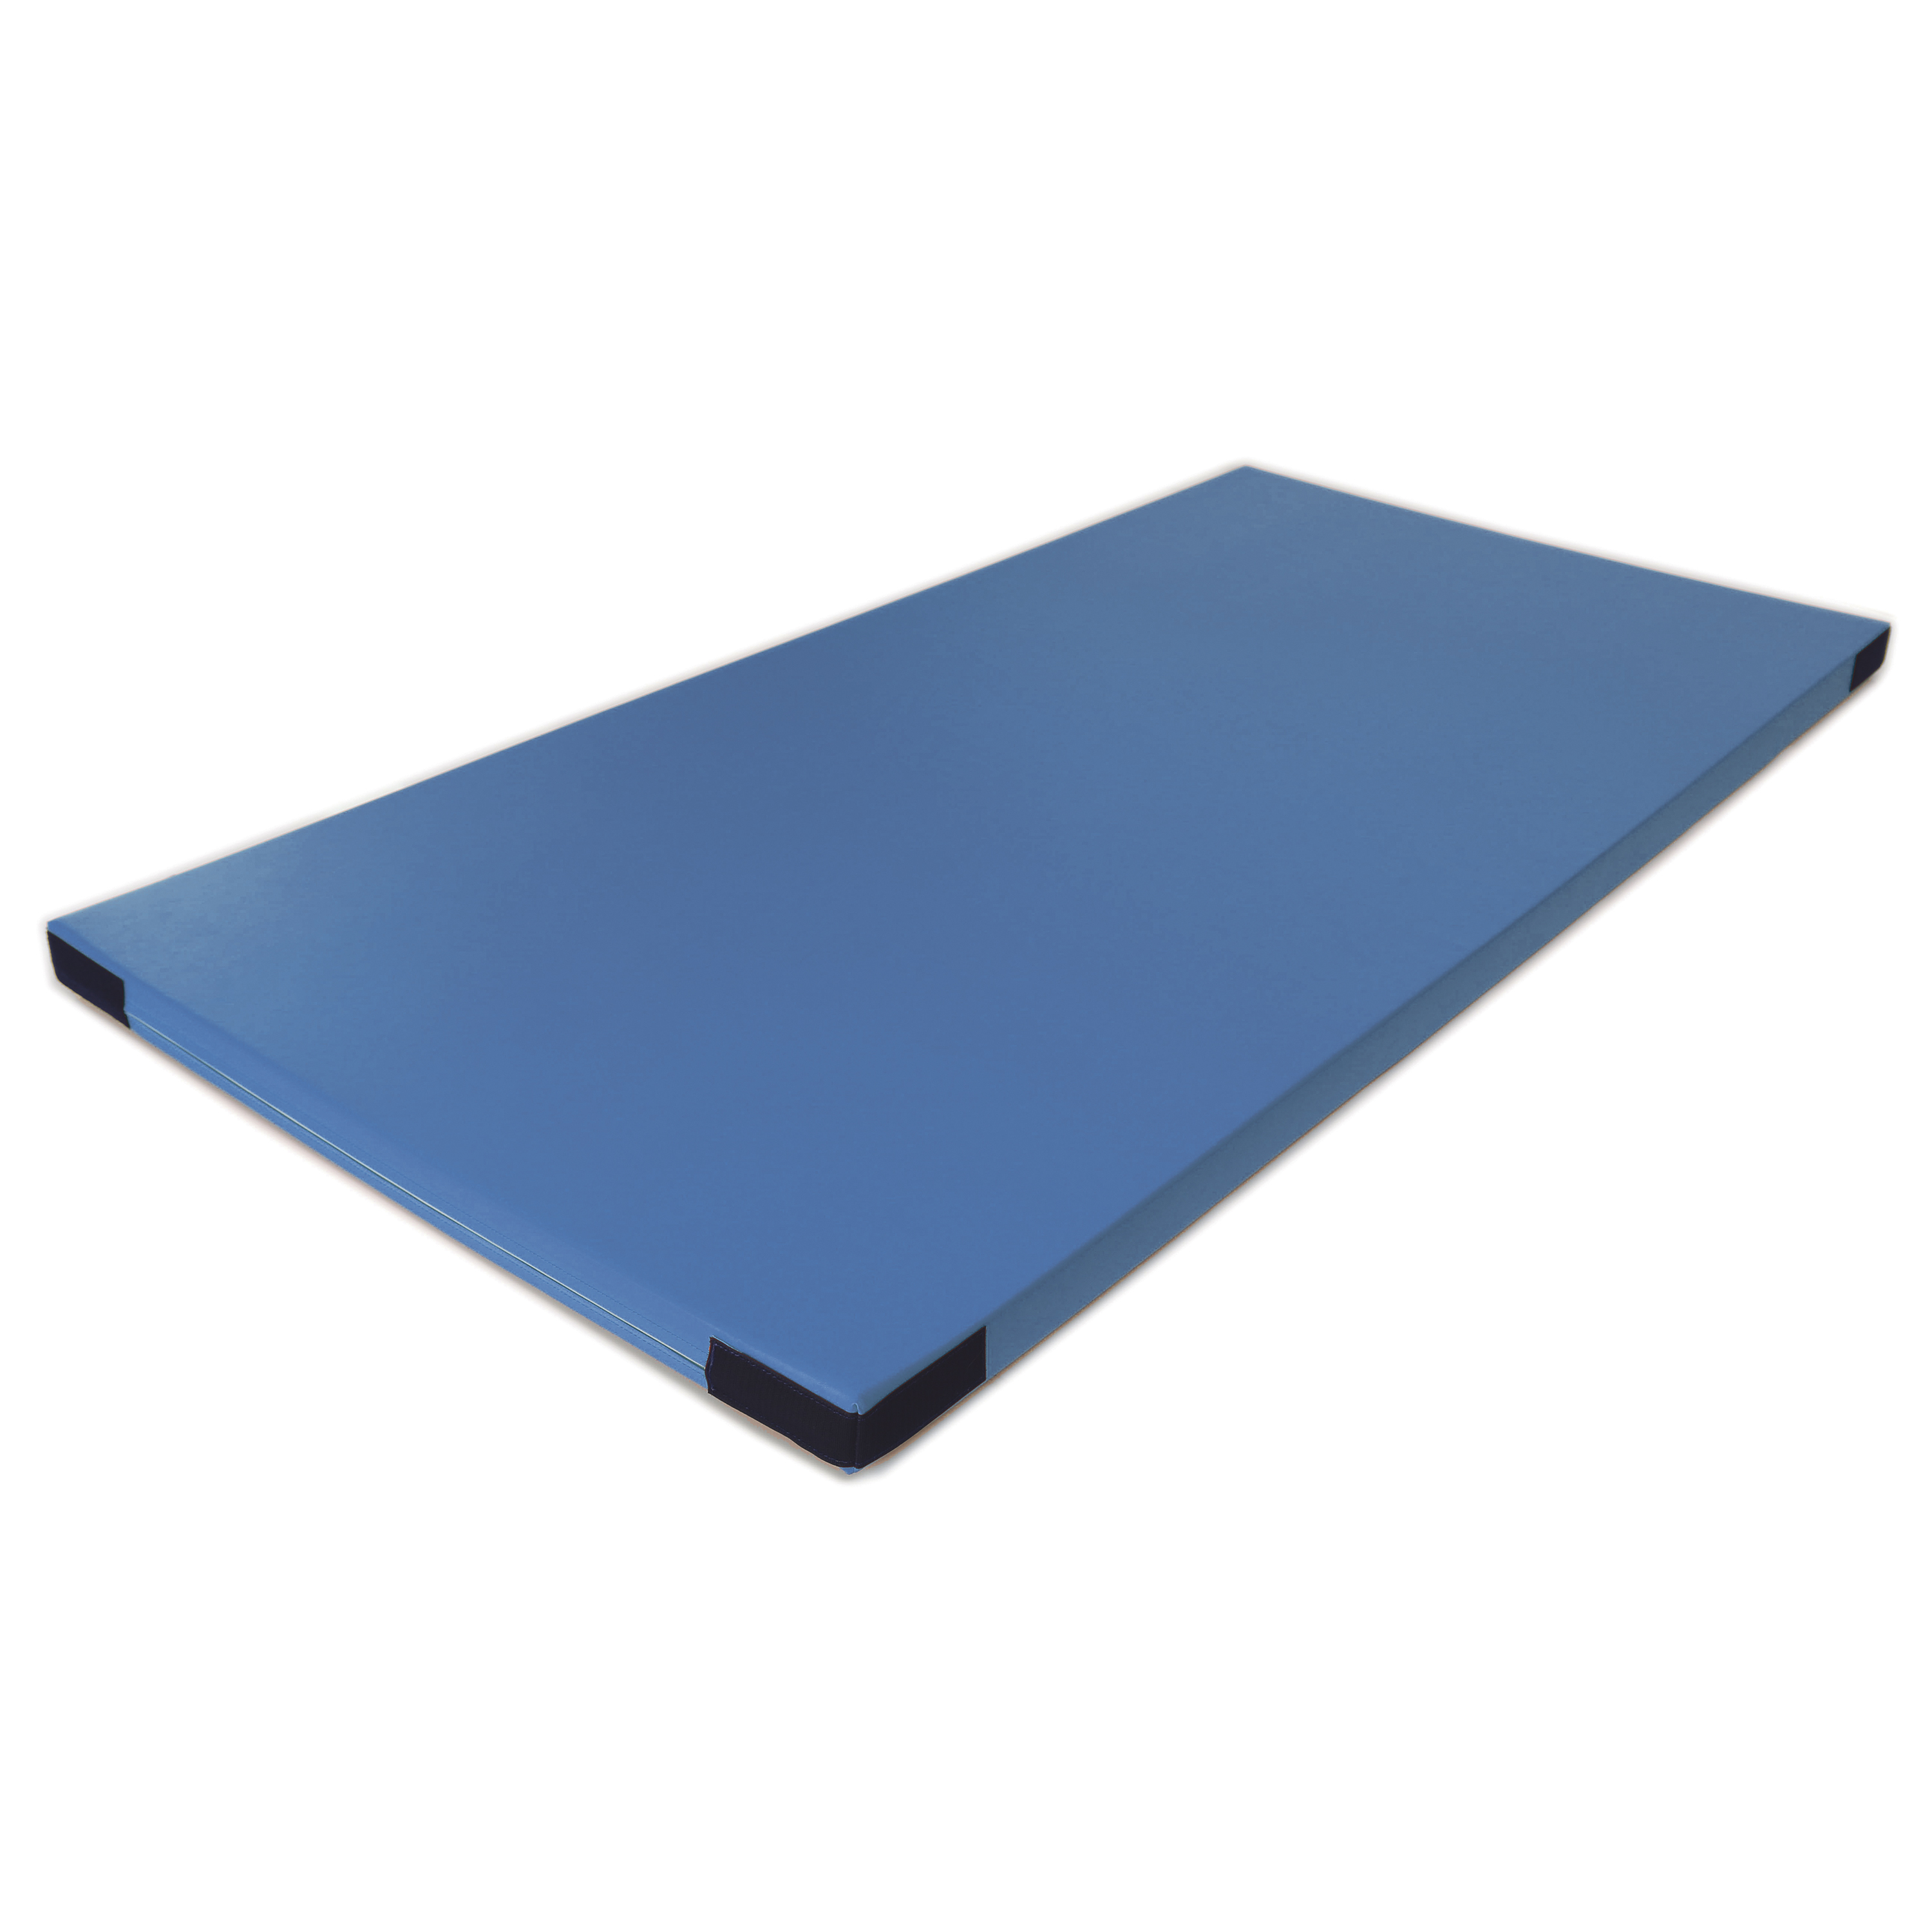 Fallschutzmatte Superleicht 'hellblau' Klett, 100 x 100 cm